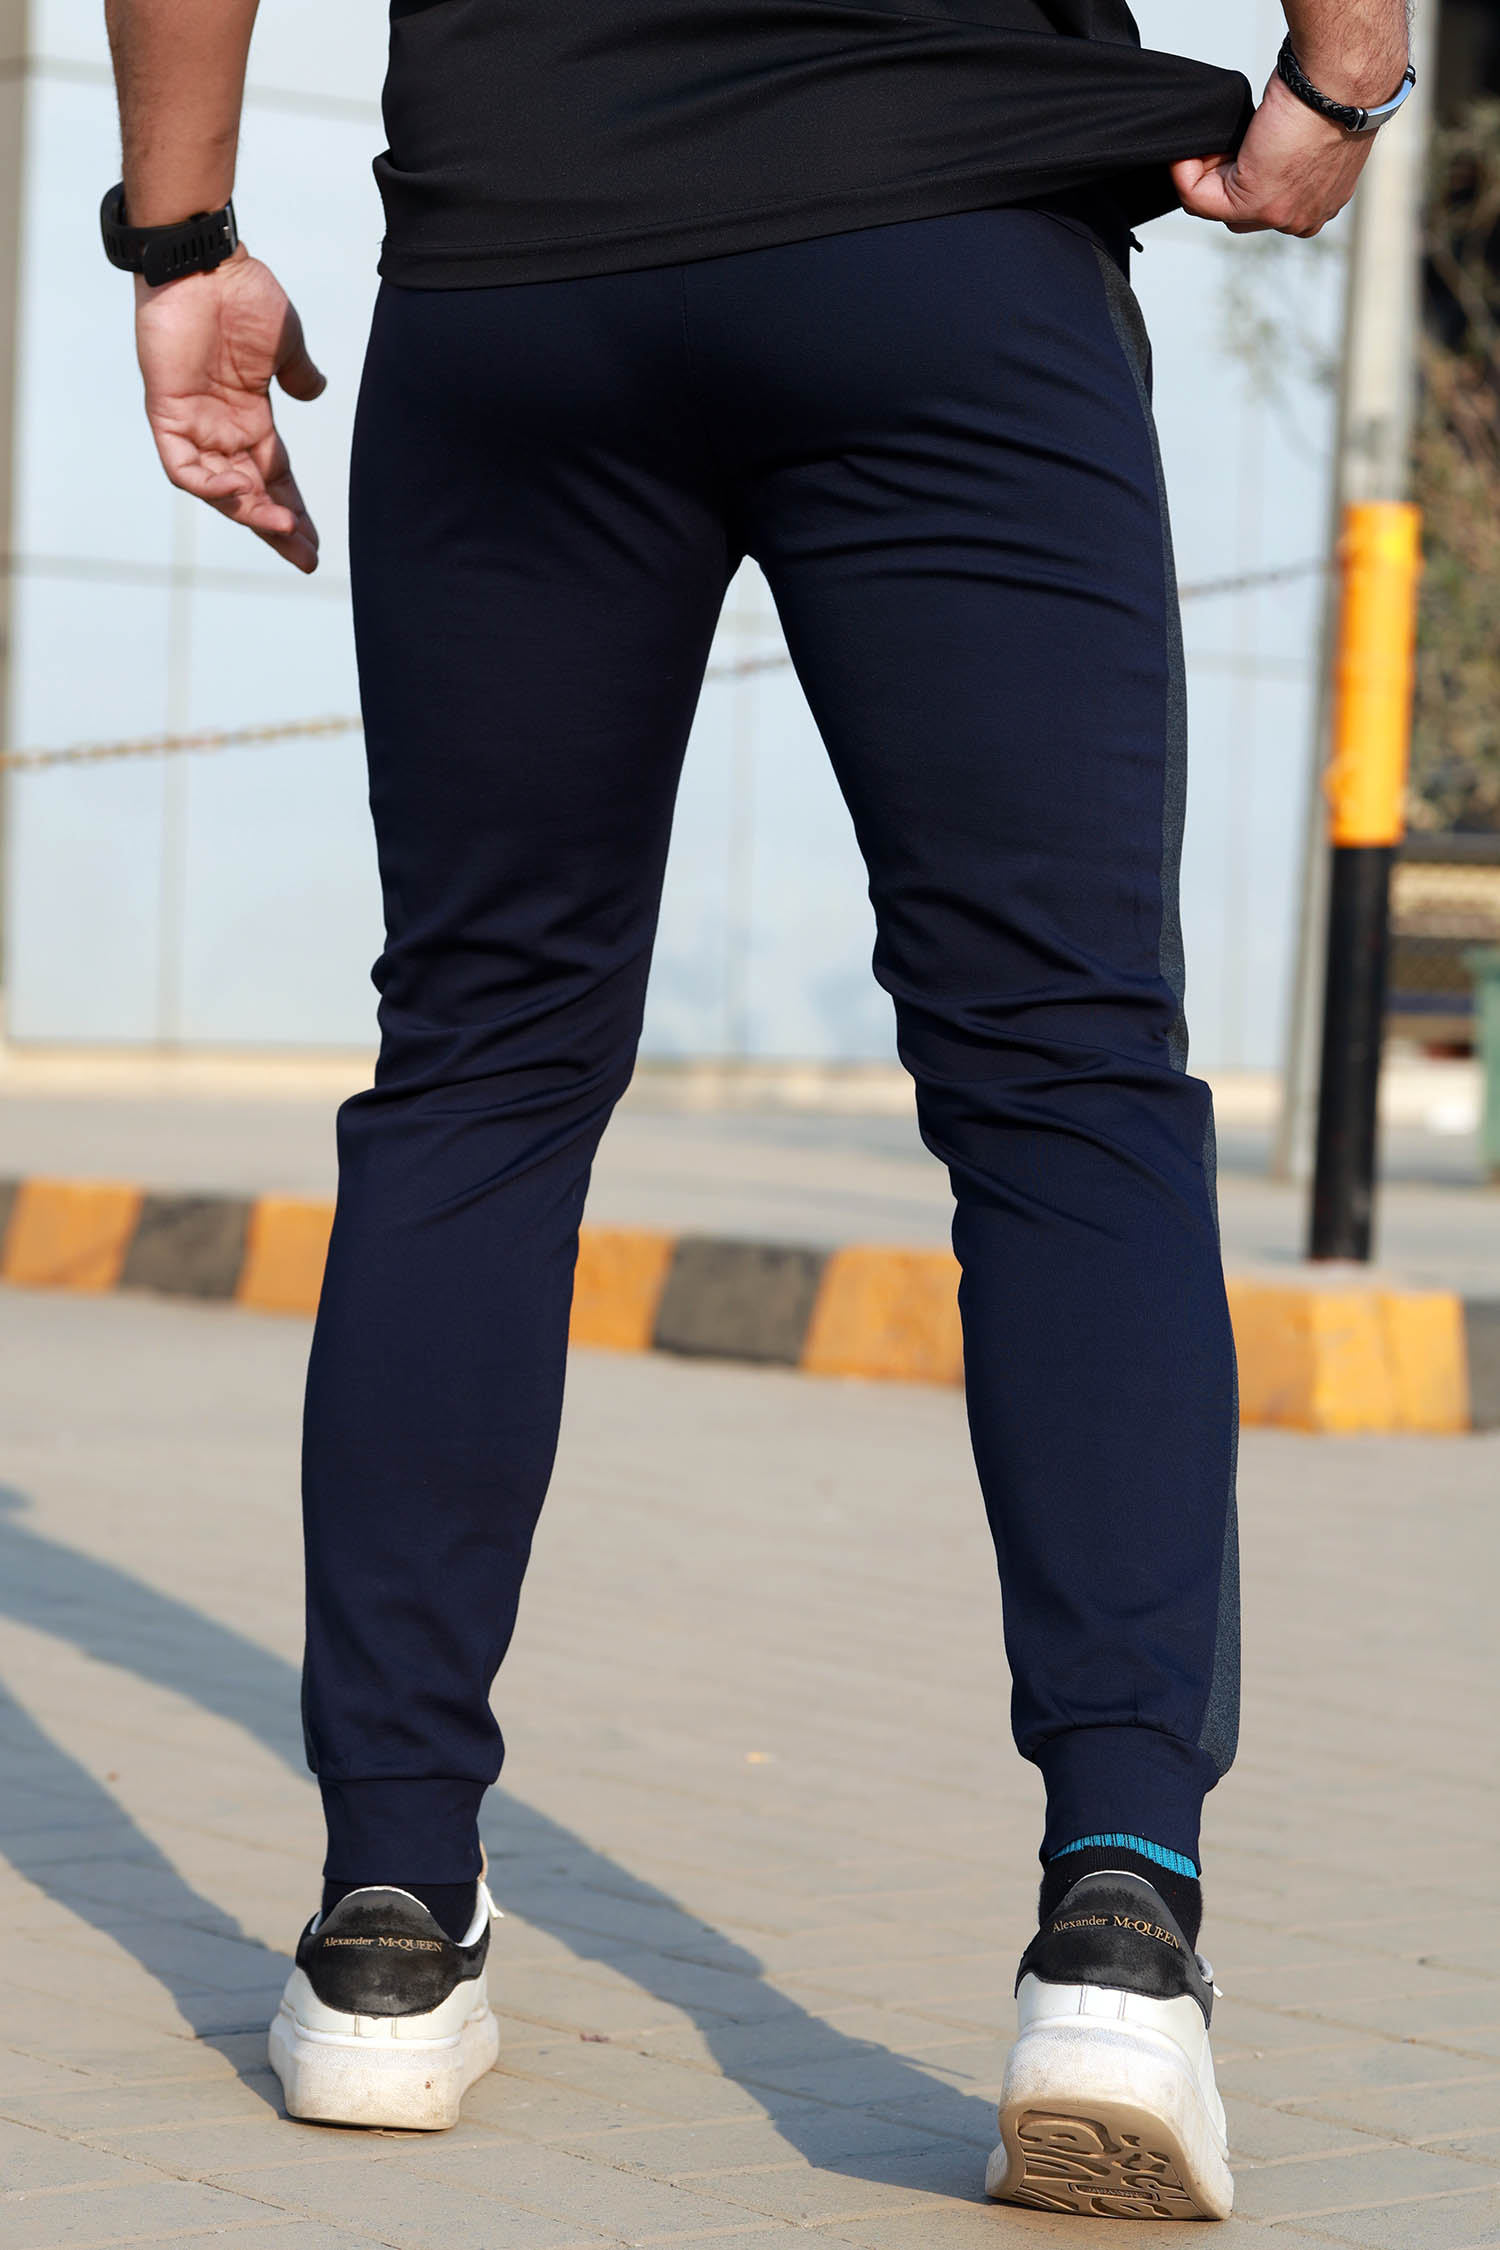 Nke Side Stripe With Aplic Logo Men Branded Trouser